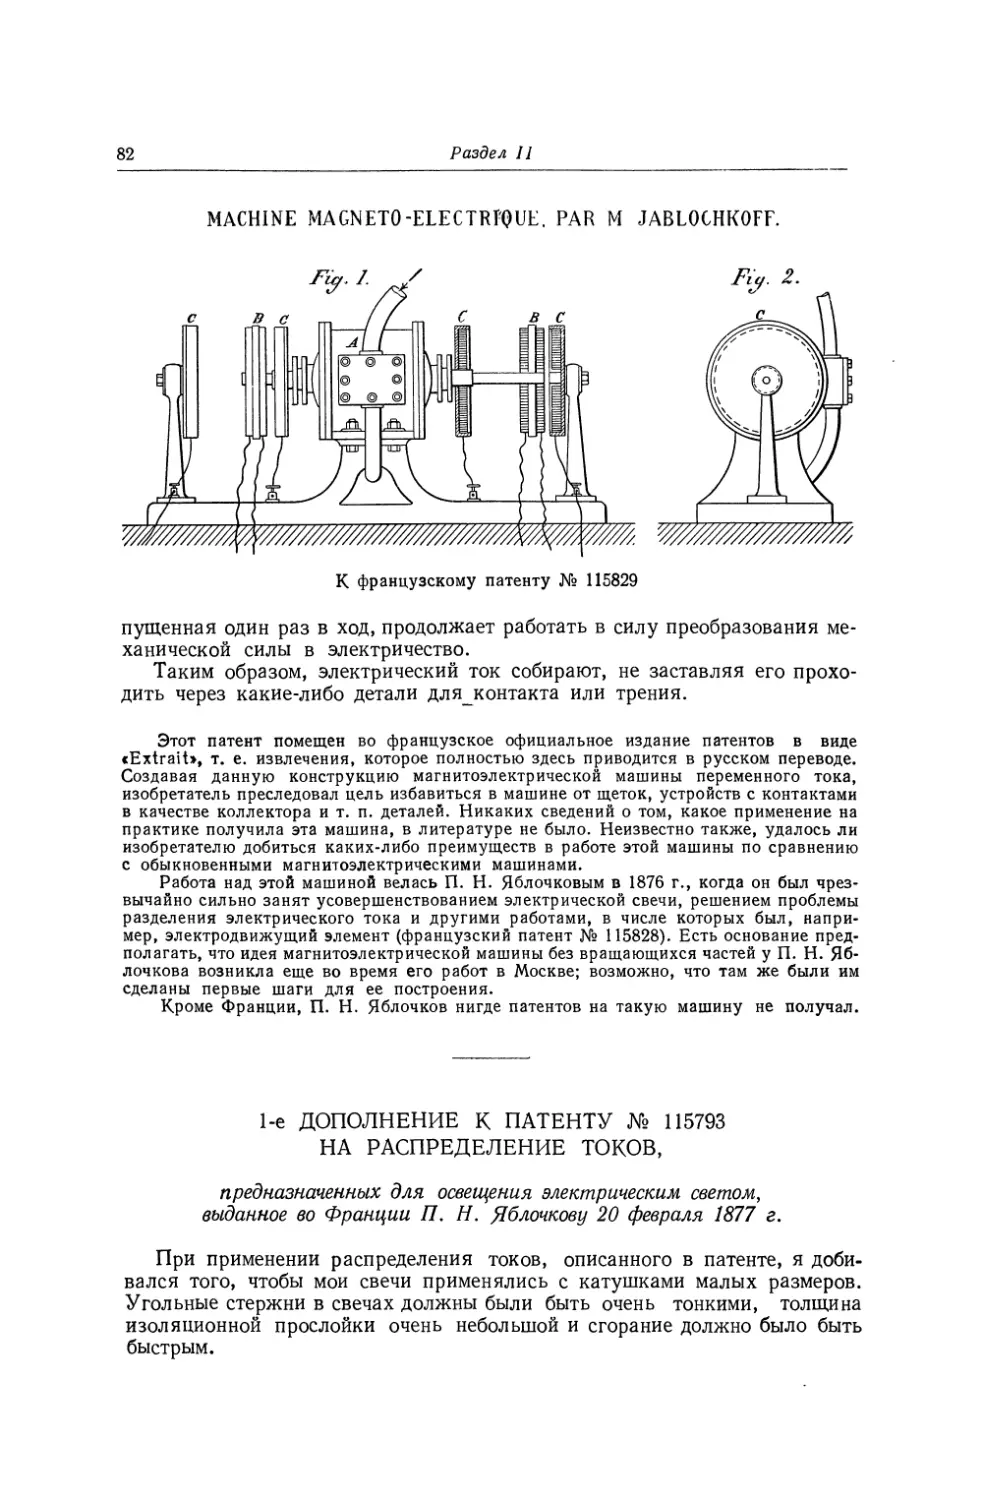 1-е дополнение к патенту № 115793 на распределение токов, предназначенных для освещения электрическим светом, выданное во Франции П. Н. Яблочкову 20 февраля 1877 г